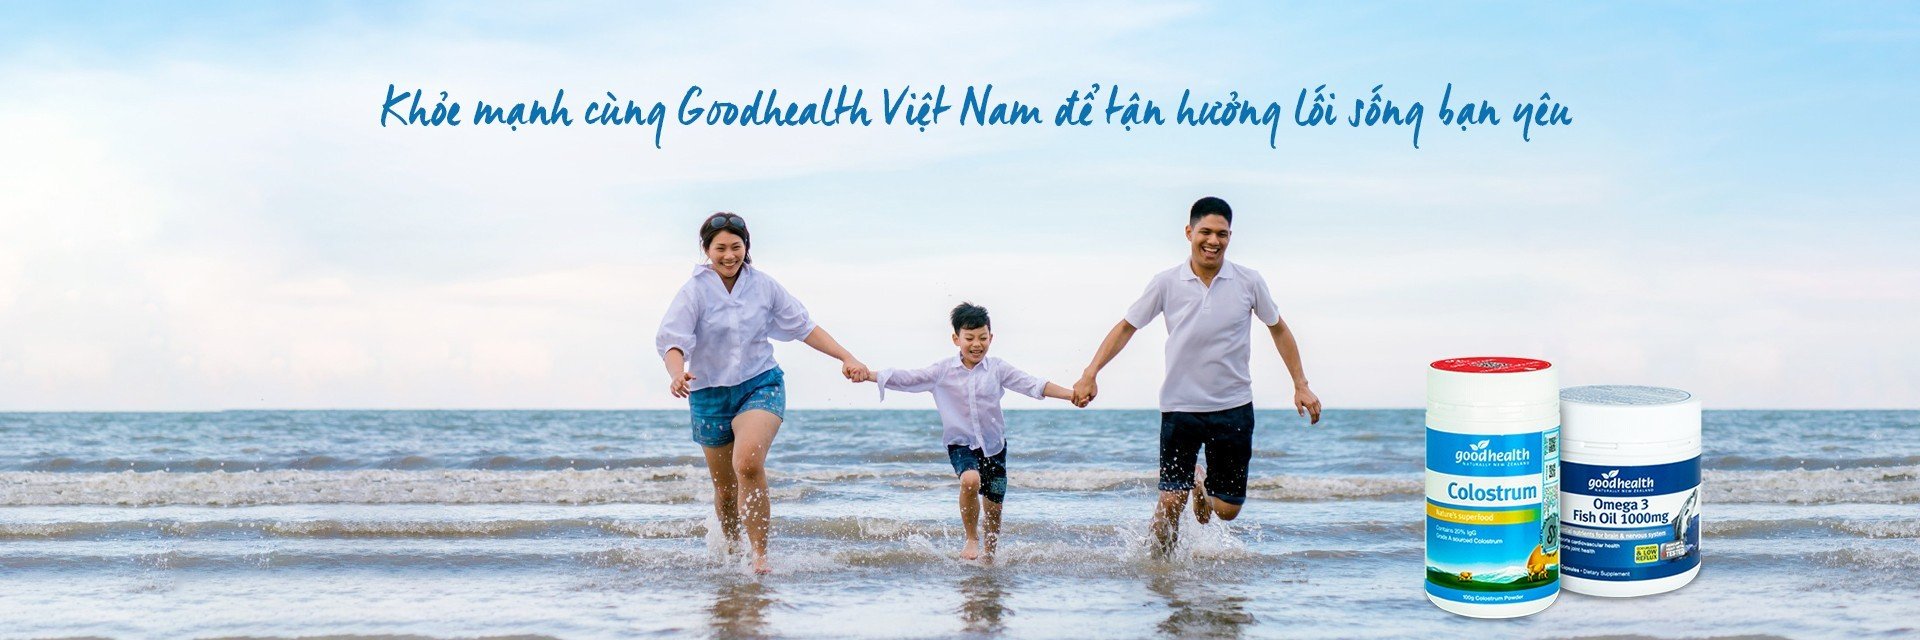 Trang chủ Goodhealth Việt Nam